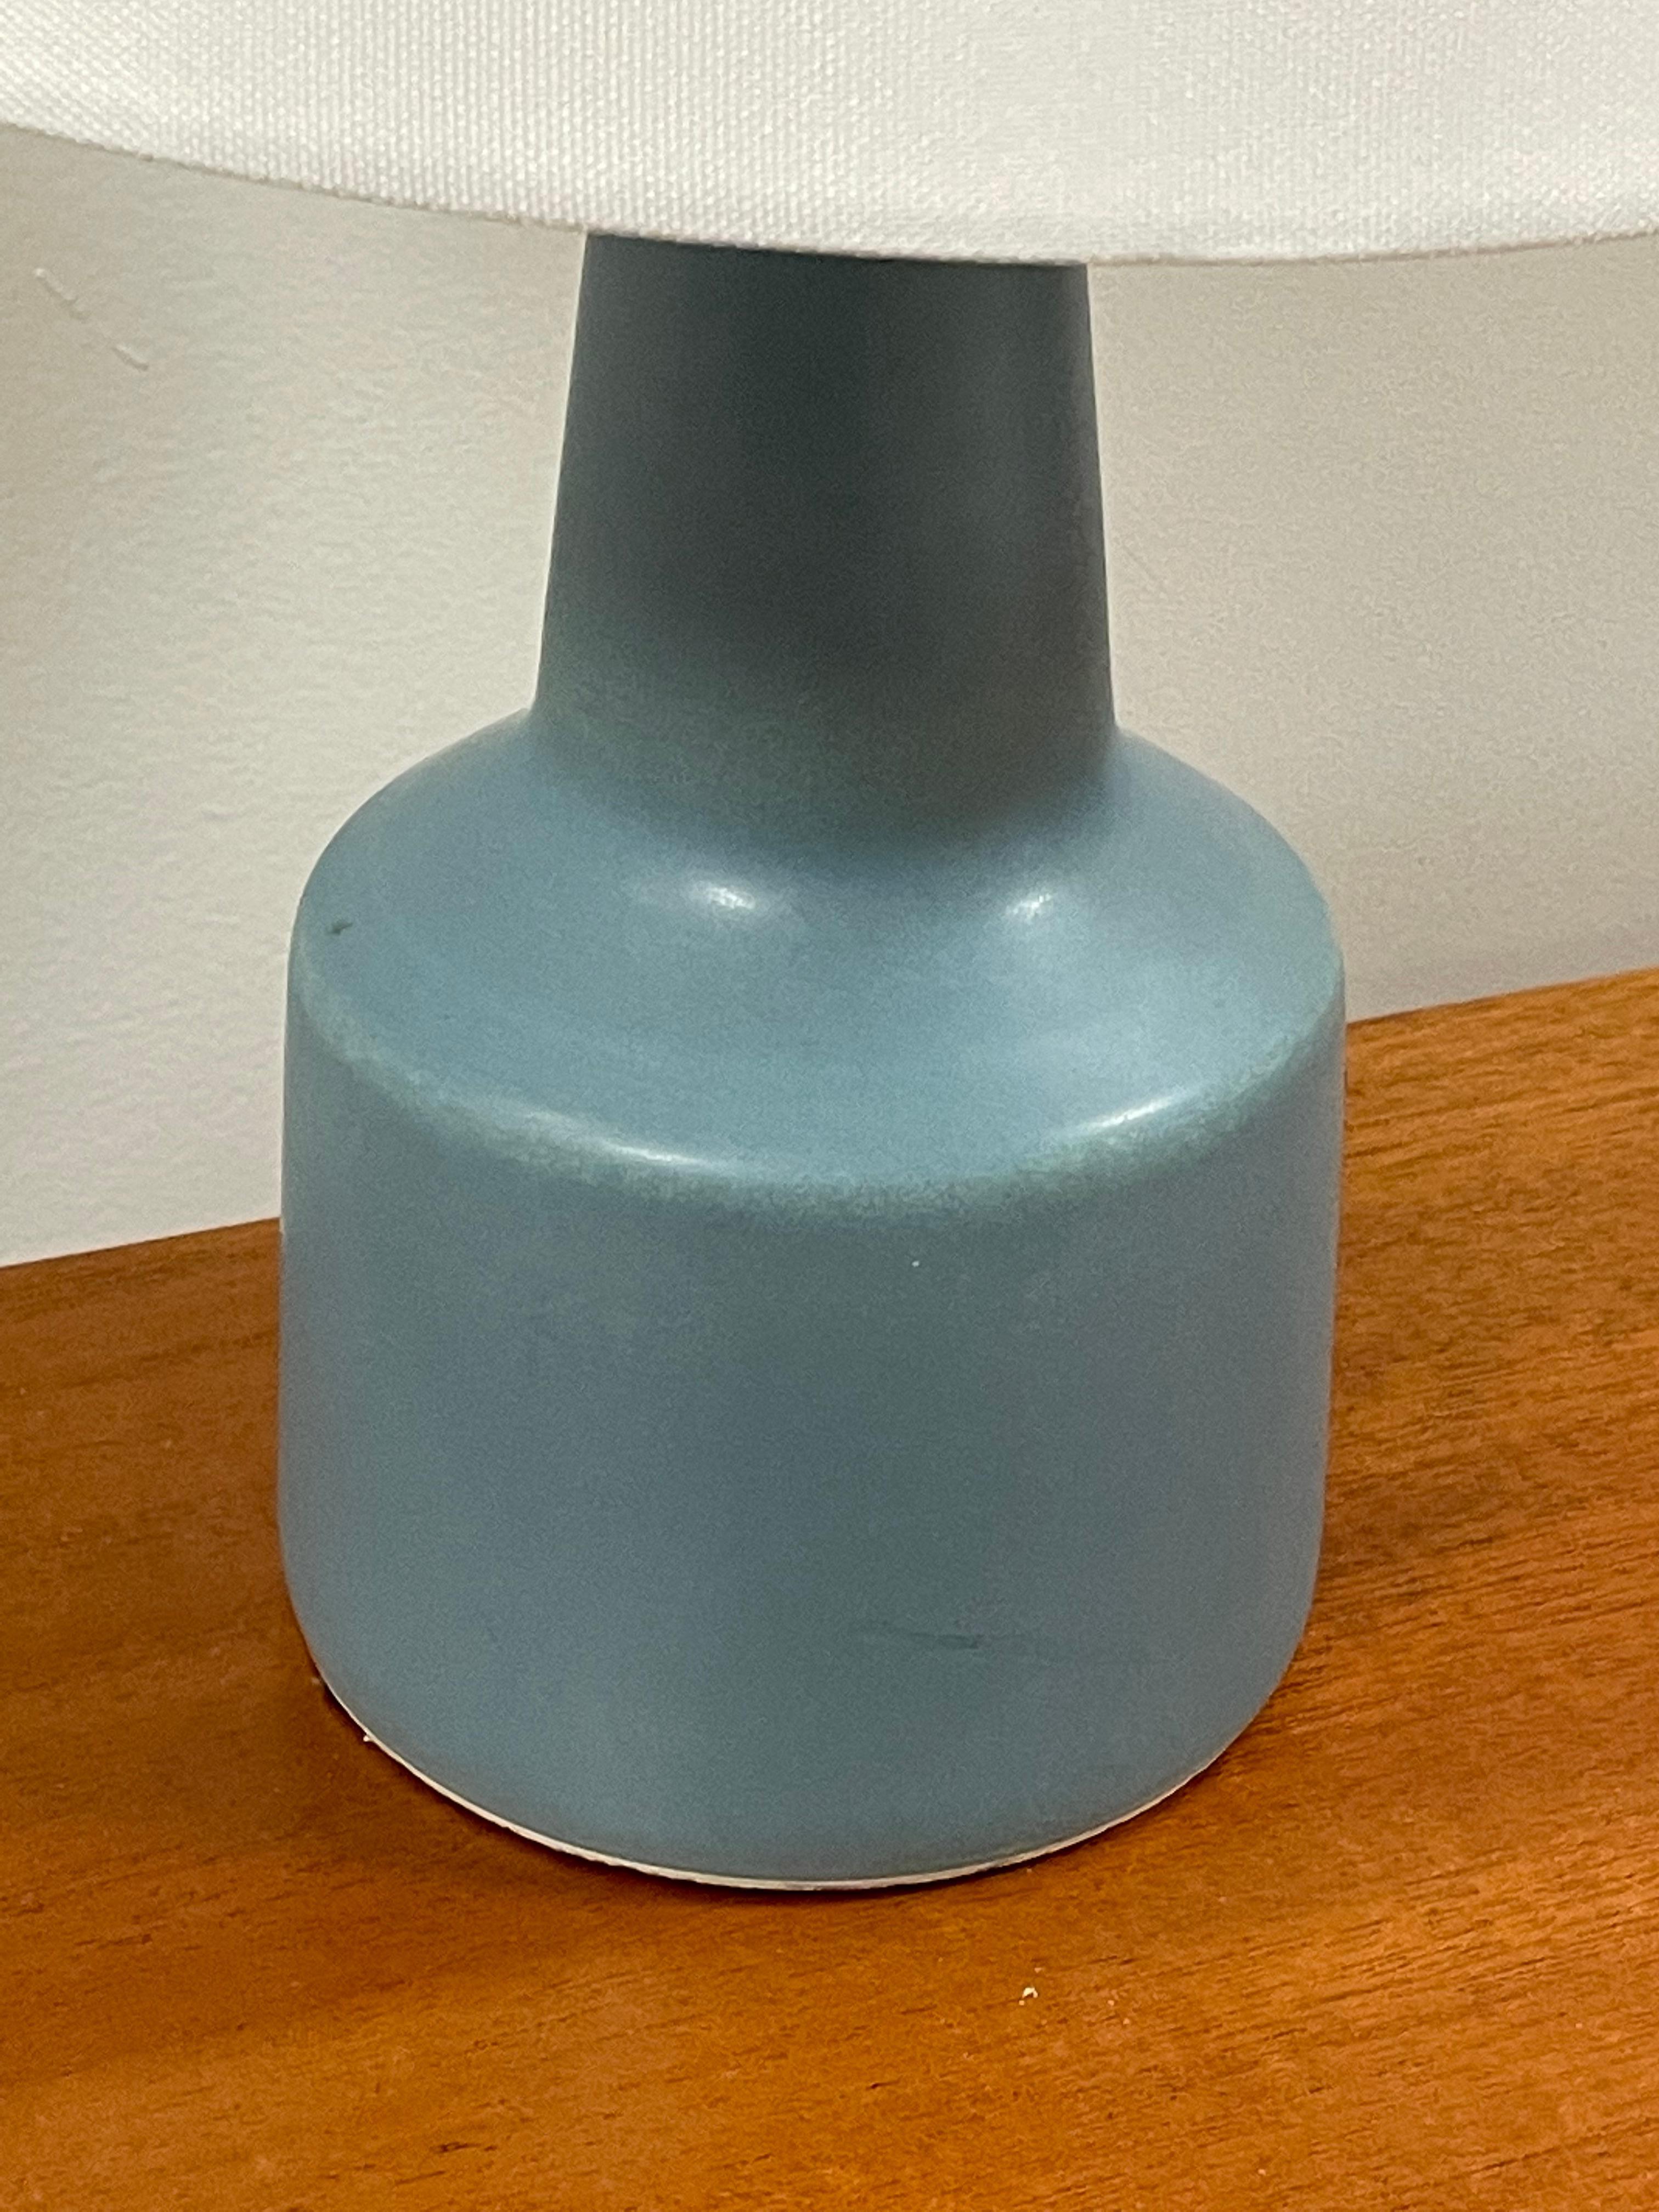 Une lampe de table conçue par Lotte et Gunnar Bostlund, années 1960. La couleur et la taille uniques en font un merveilleux exemple.

En général
15.hauteur de 25 pouces
10